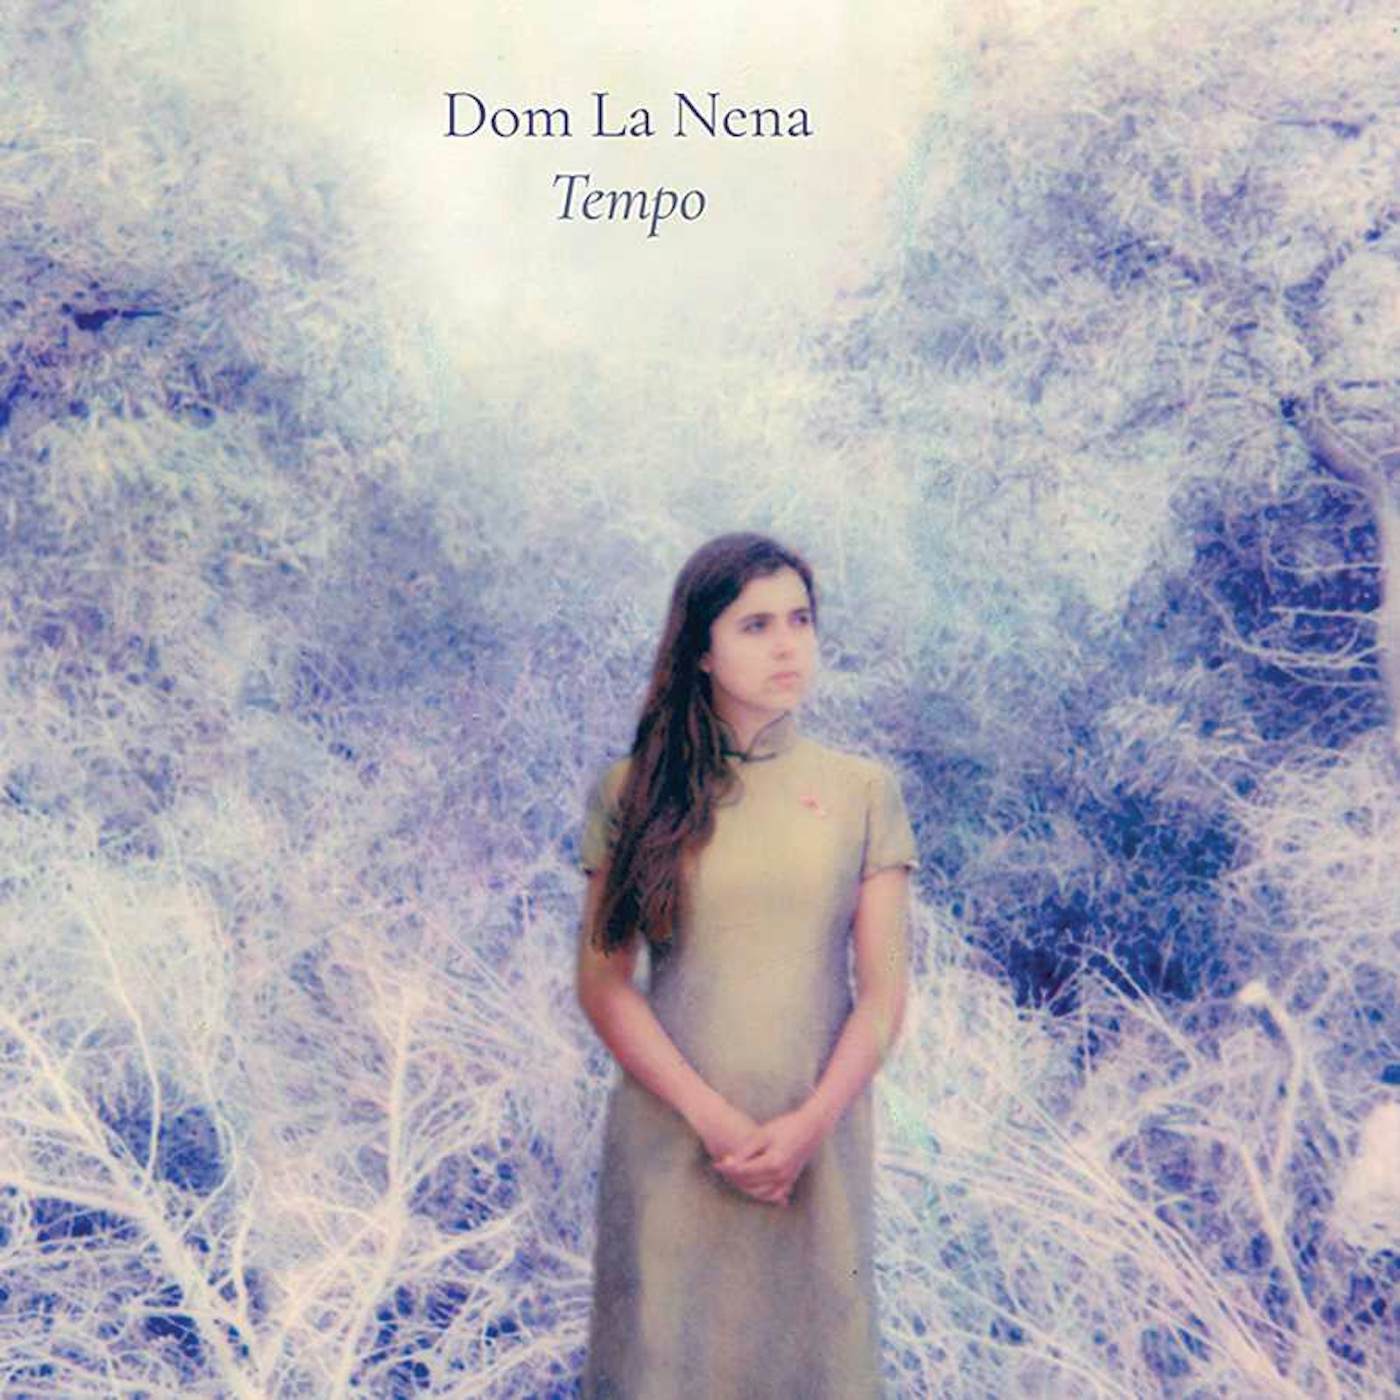 Dom La Nena TEMPO CD